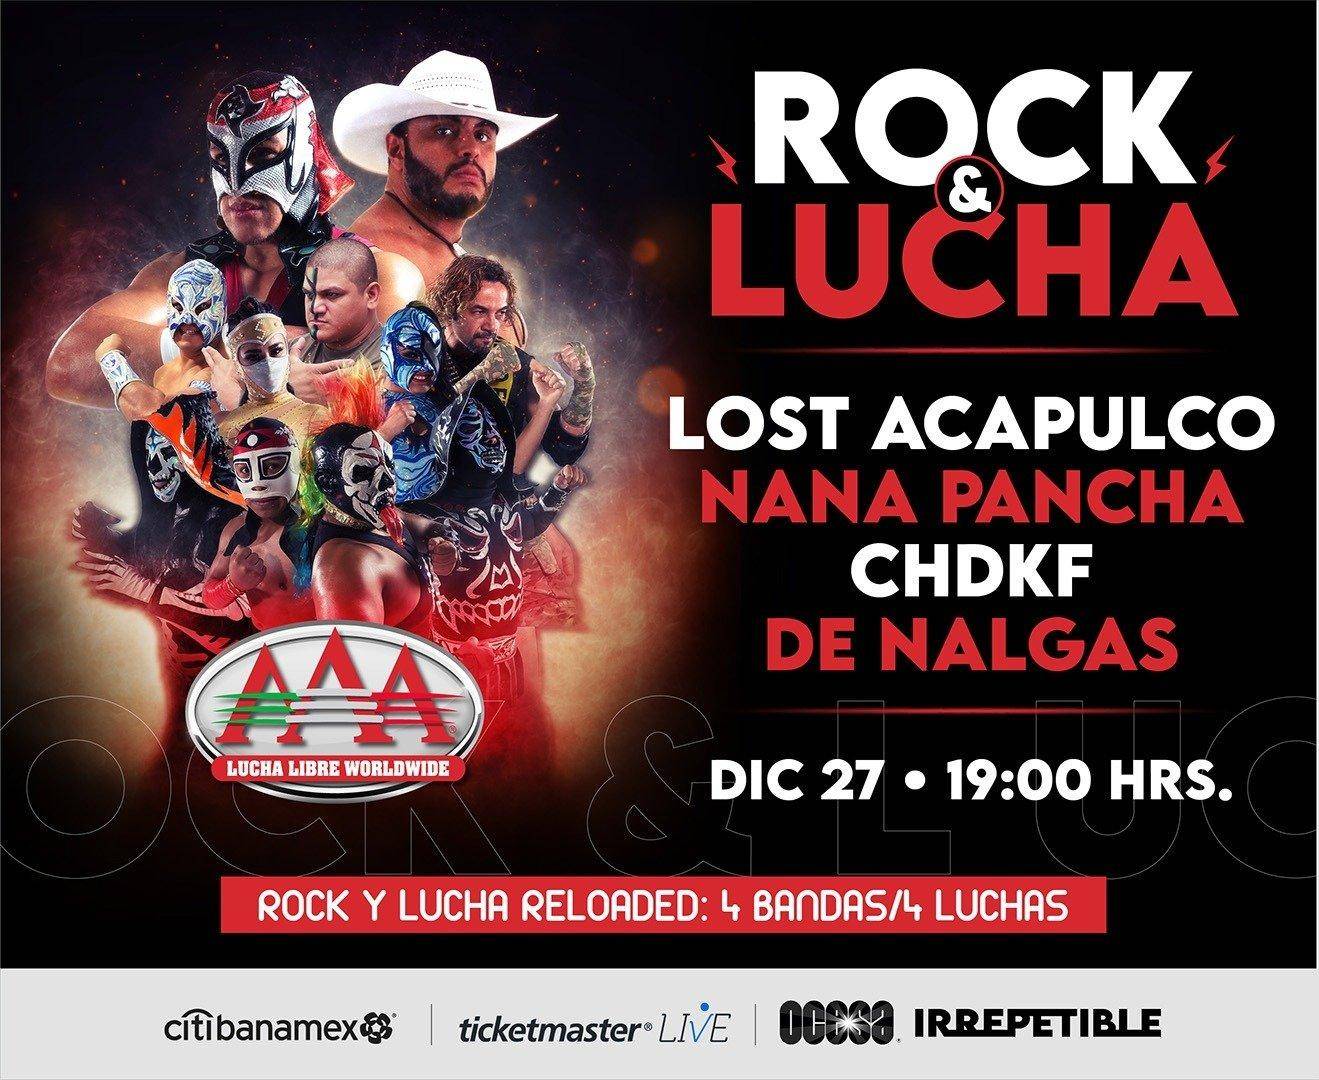 Rock y Luchas 2020, Chingadazos en la Arena. 5